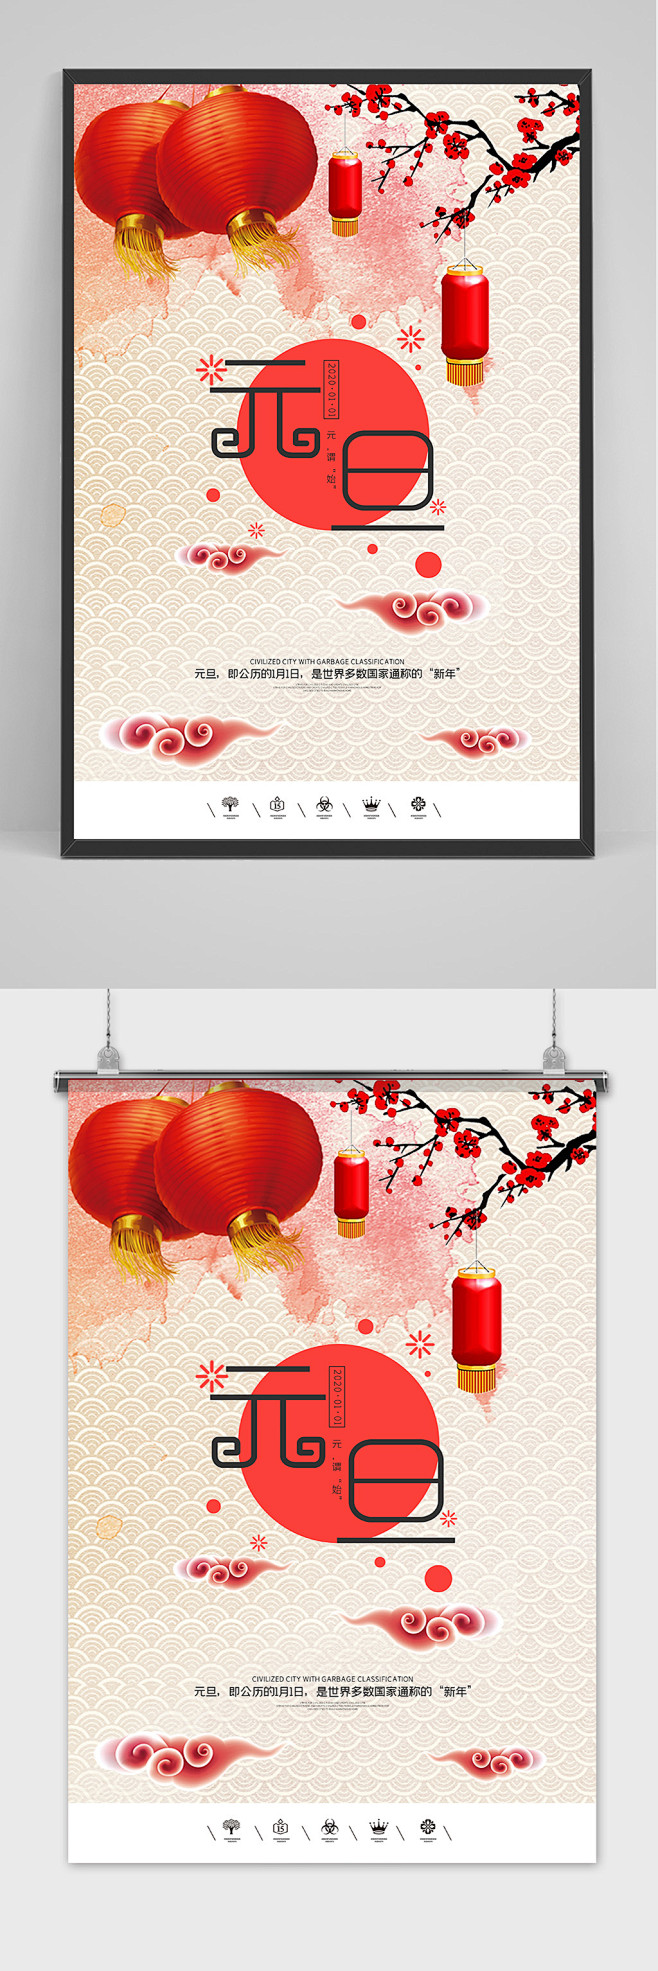 创意中国风2020鼠年元旦节户外海报